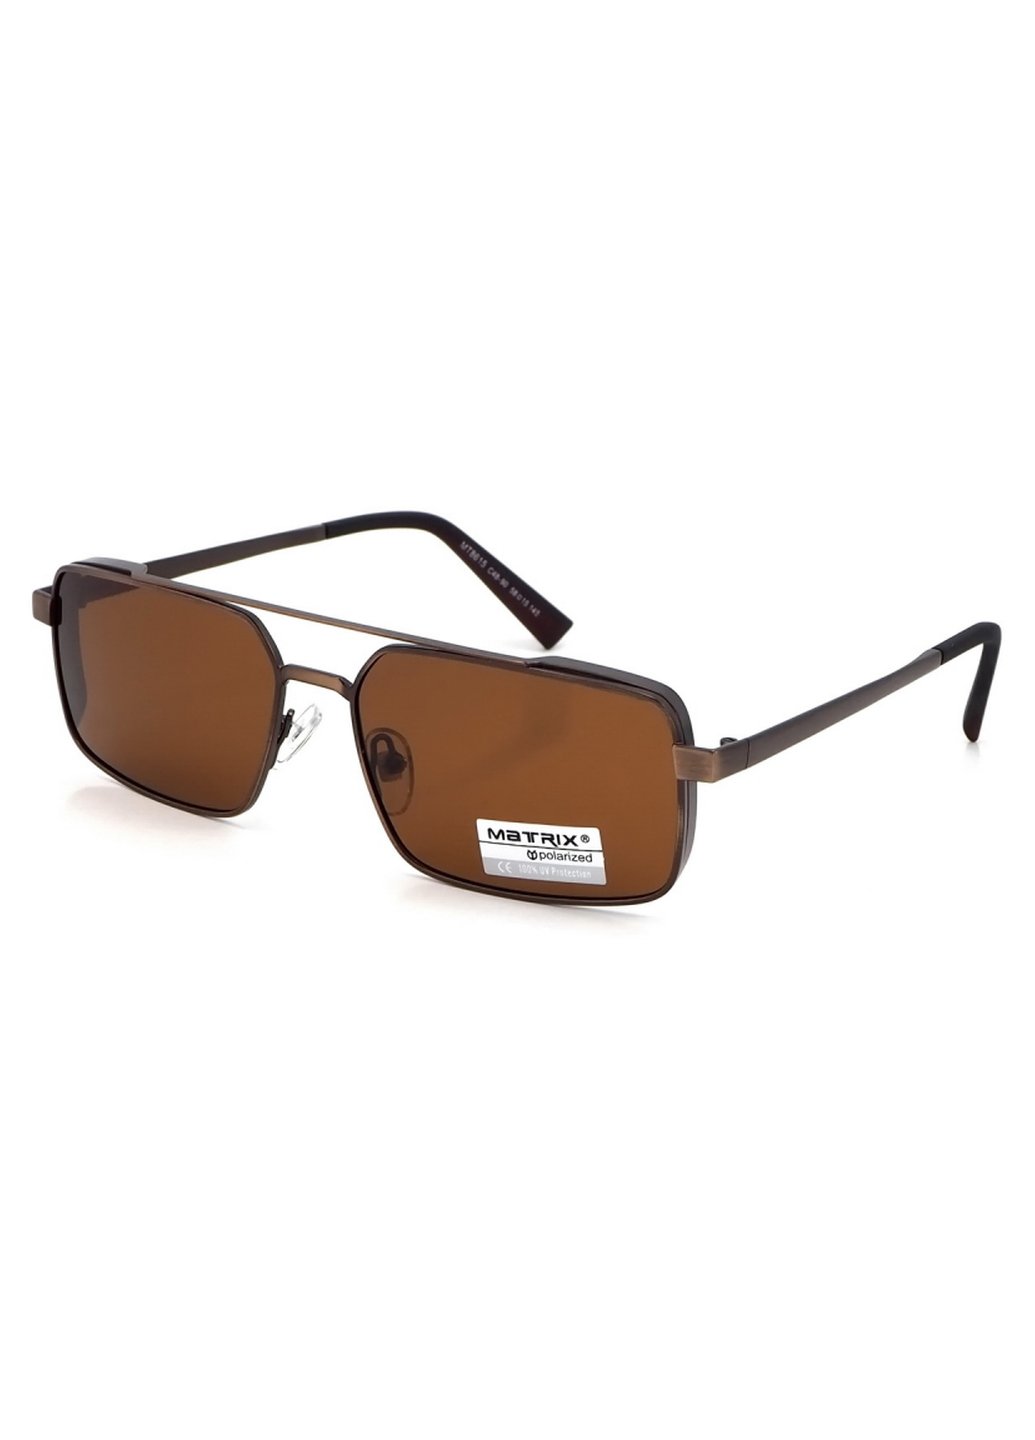 Купить Коричневые мужские солнцезащитные очки Matrix с поляризацией MT8615 111012 в интернет-магазине